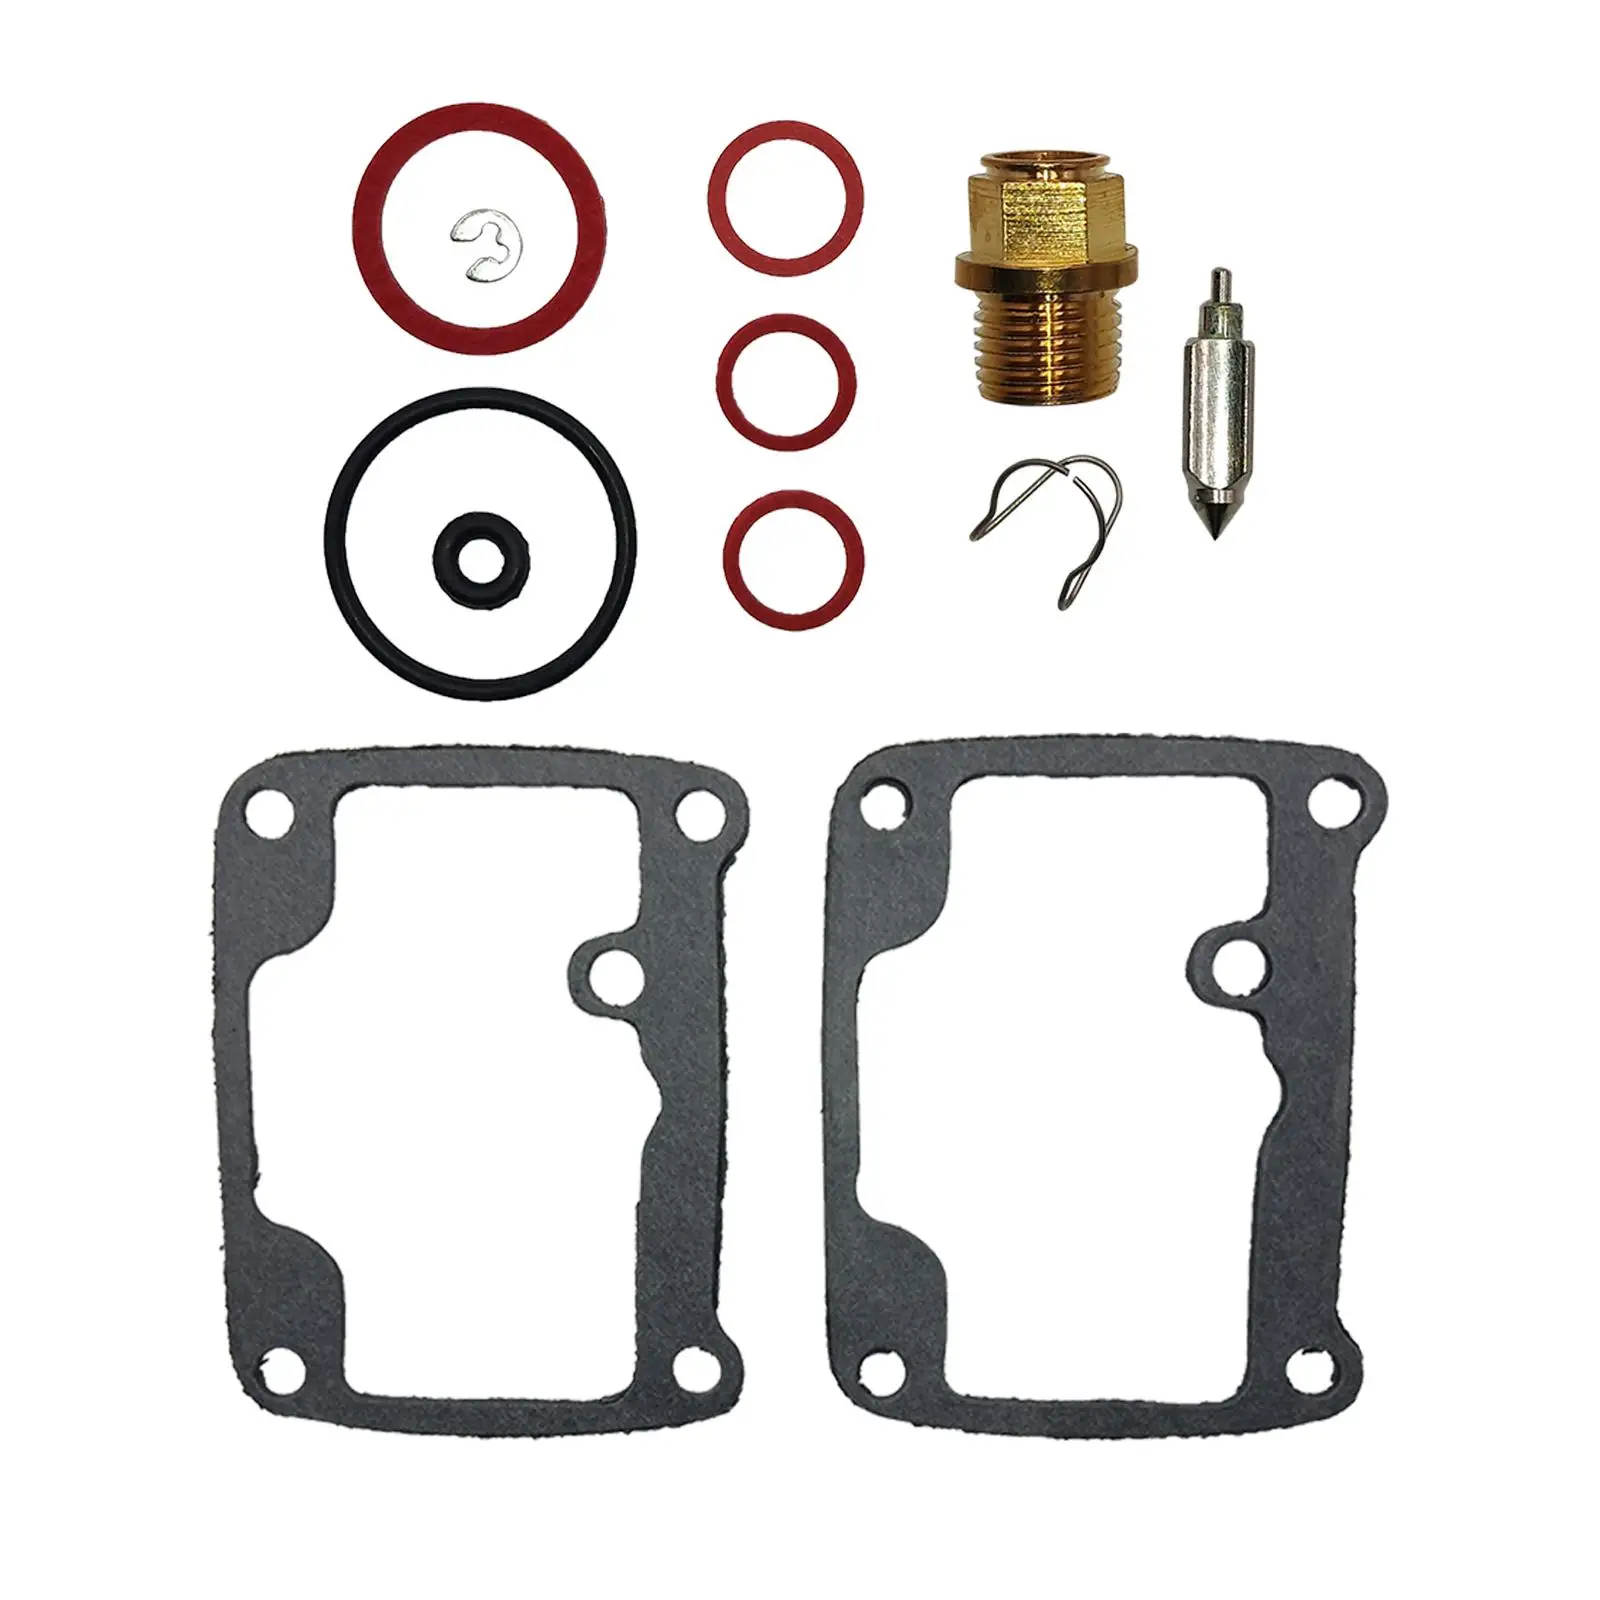 Carb Carburetor Repair Rebuild Kit Spare Parts Professional Replacement